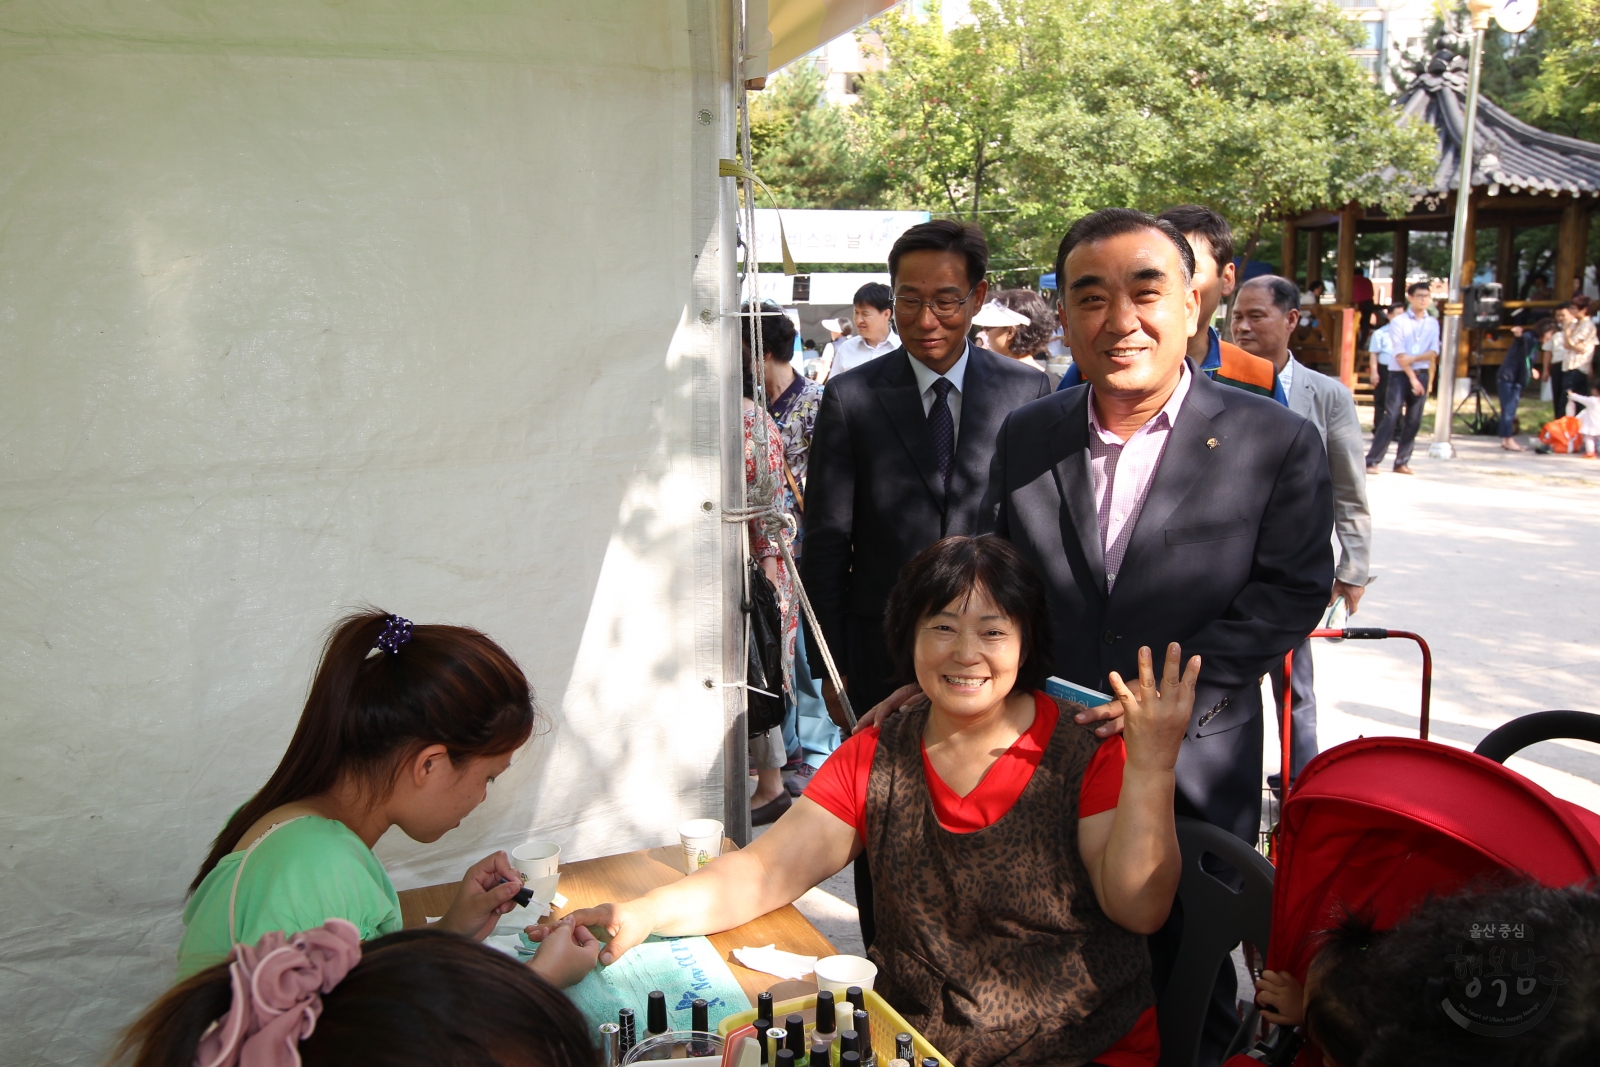 2013 삼산동 베스트 행정서비스의 날 의 사진